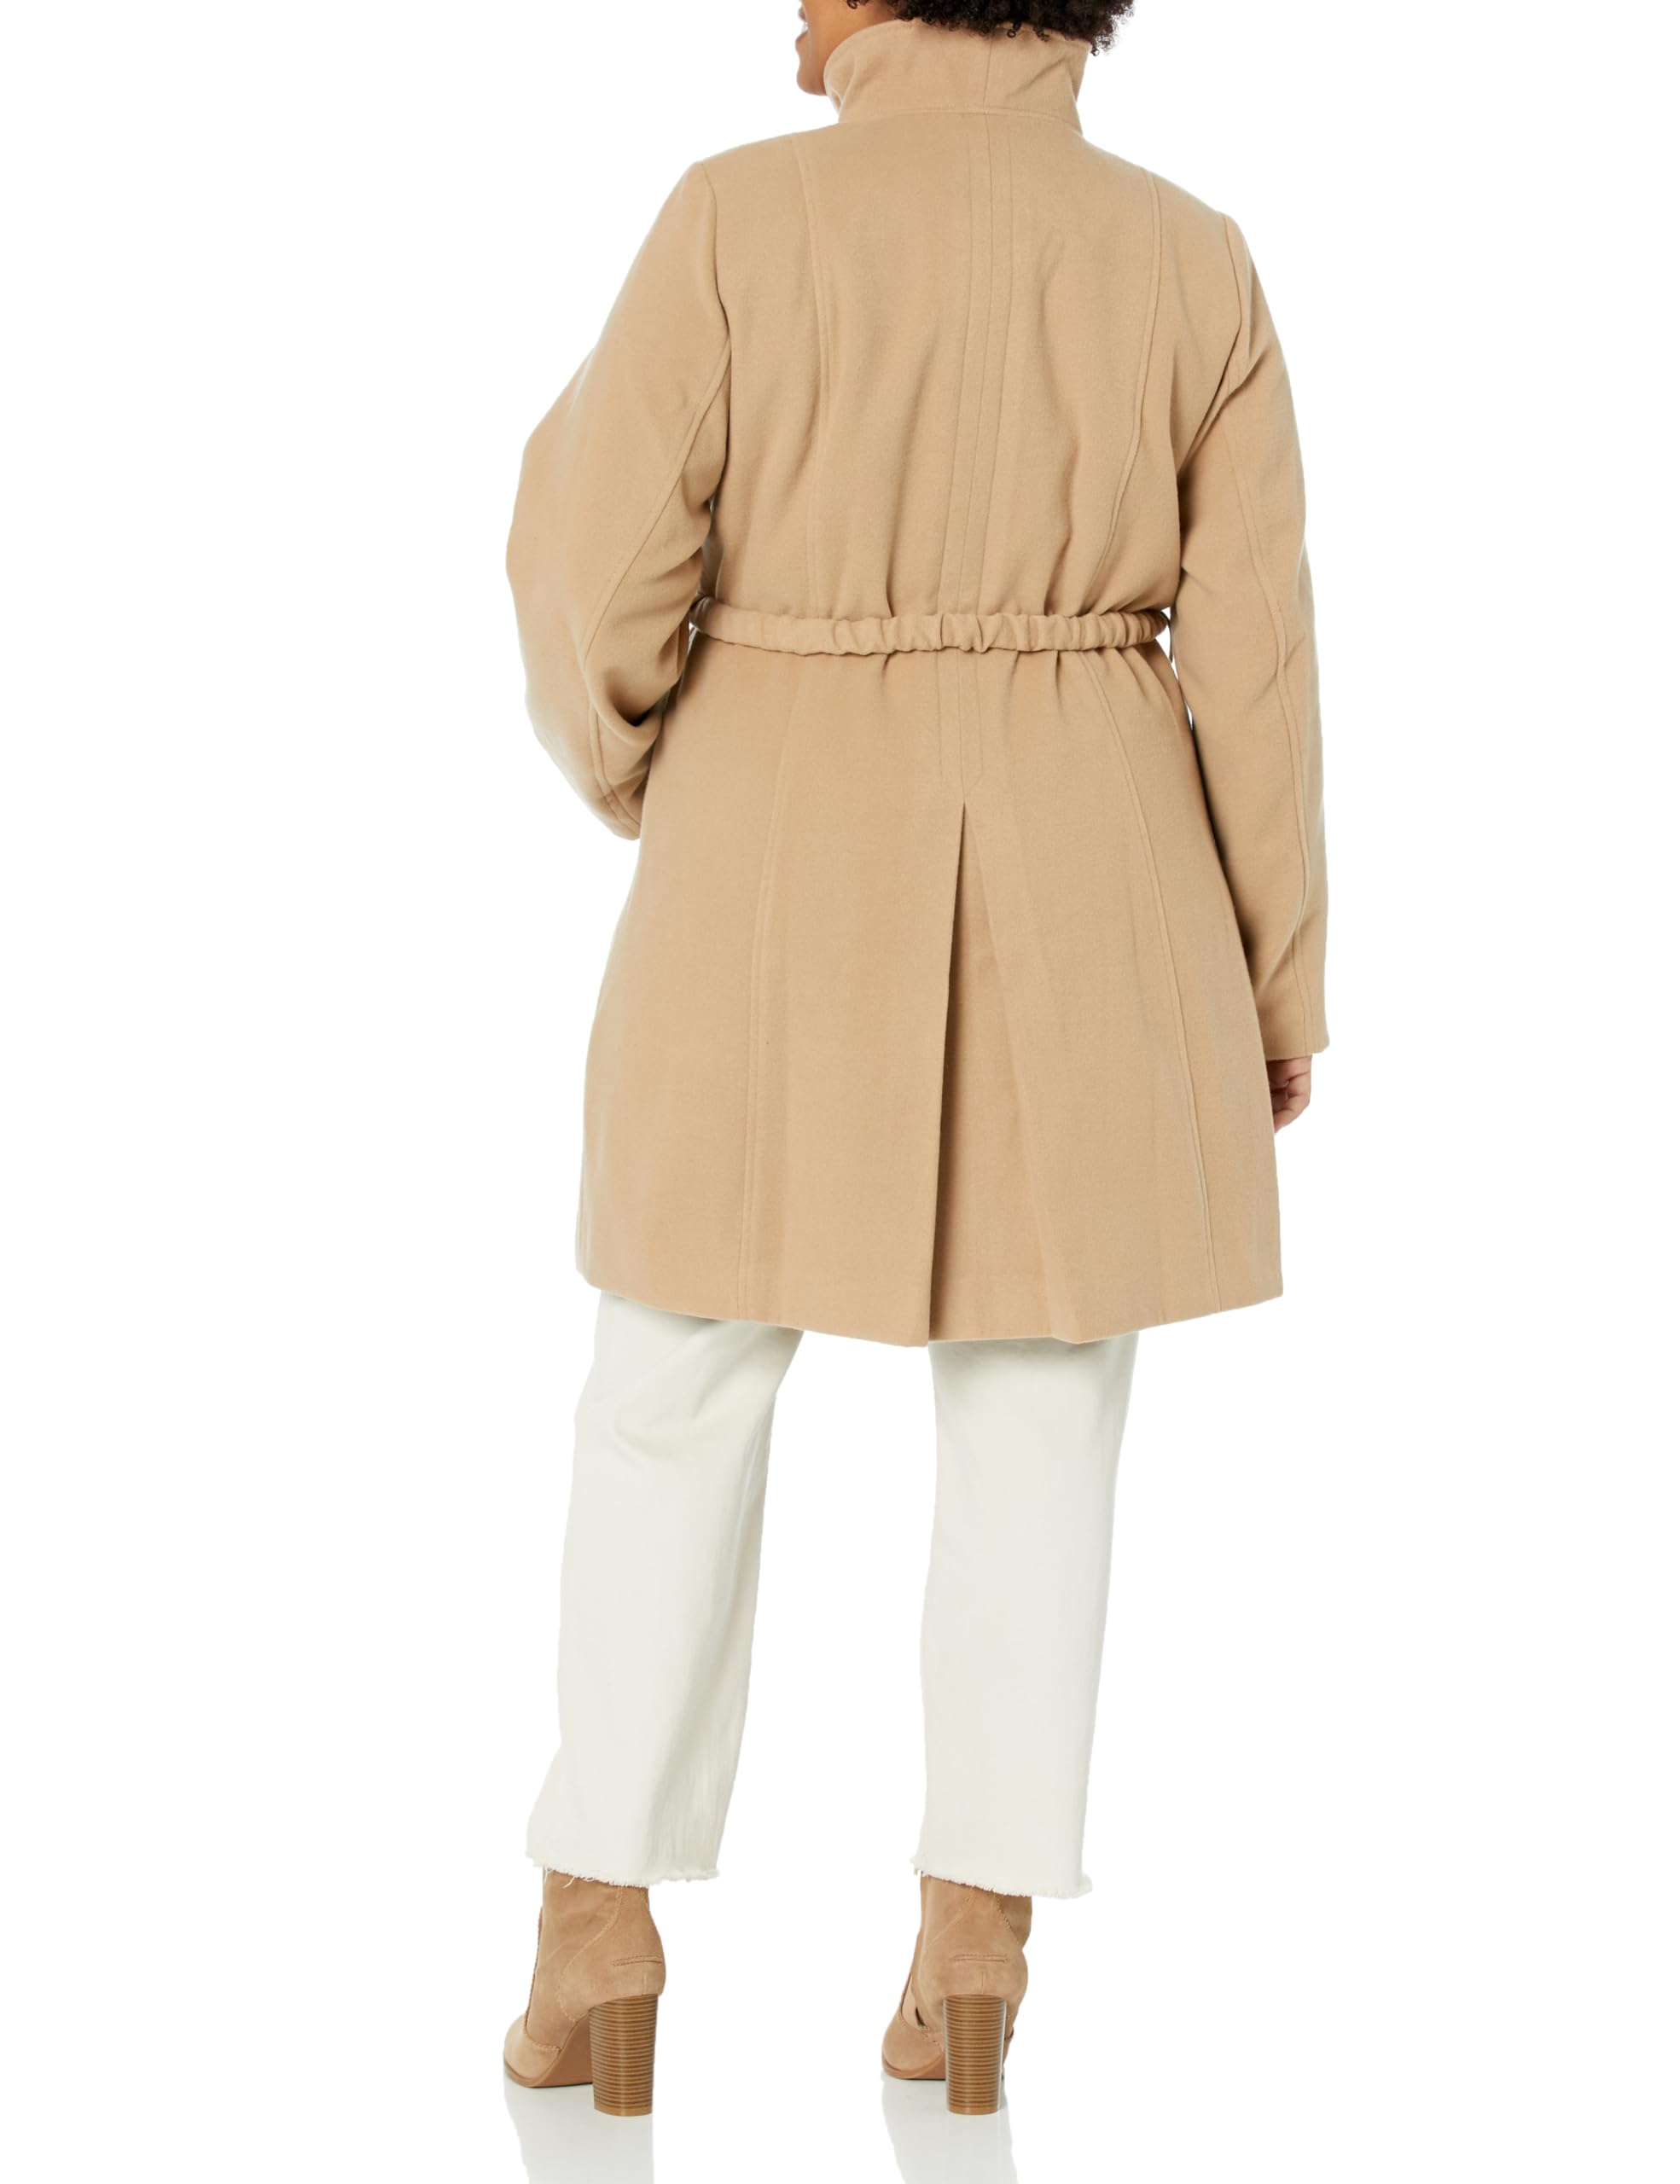 Arna York Women's Arnayork Plus Size Jacket Shiloh